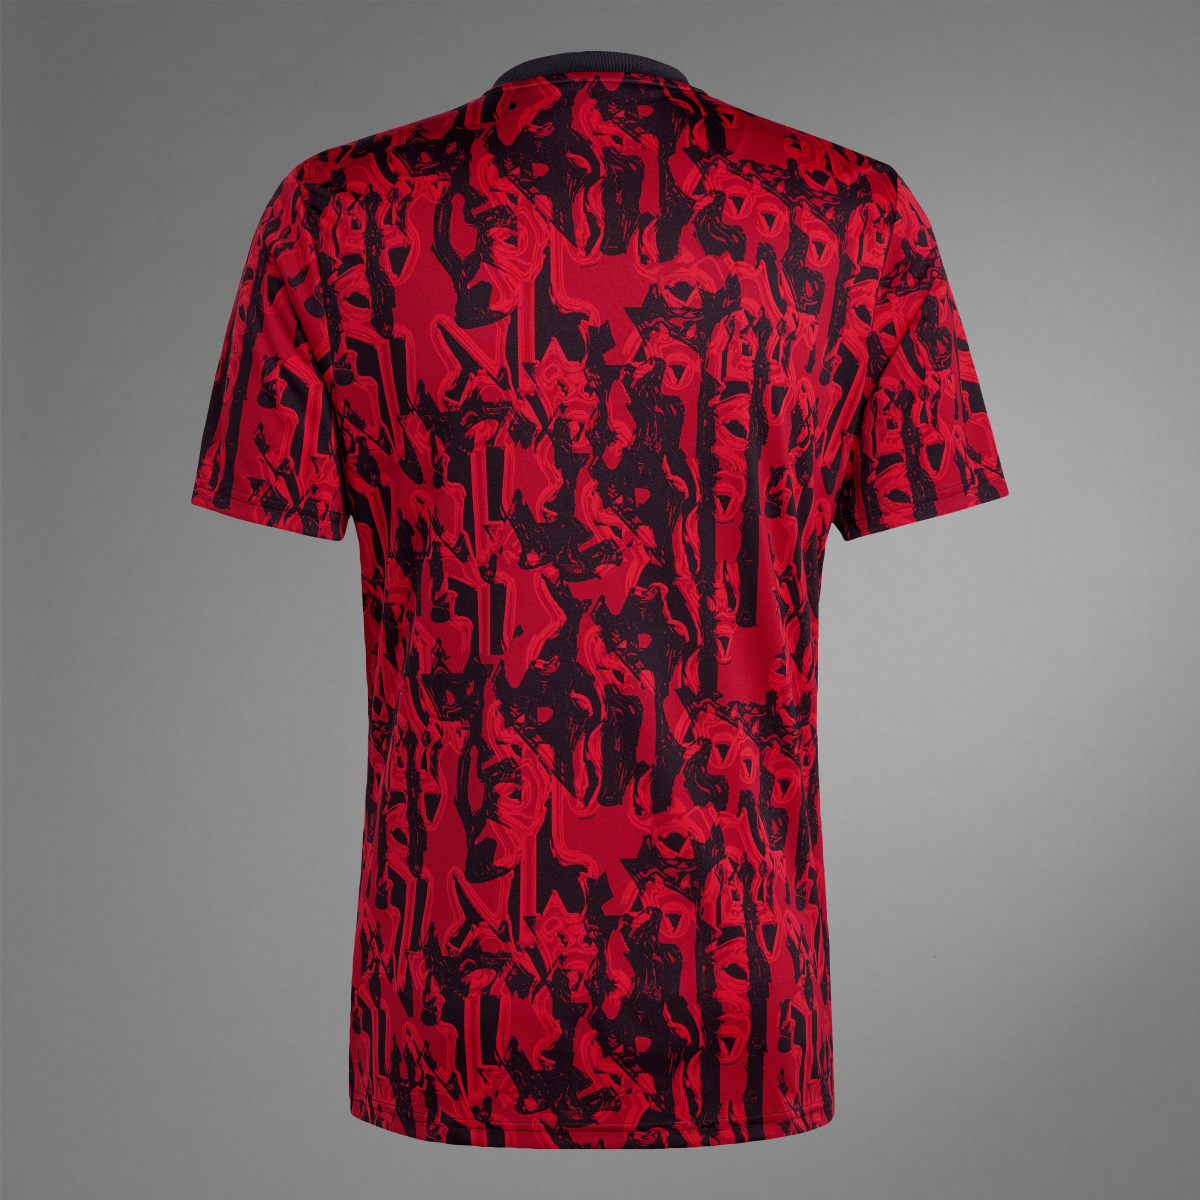 Adidas Camisola de Aquecimento do Manchester United. 11